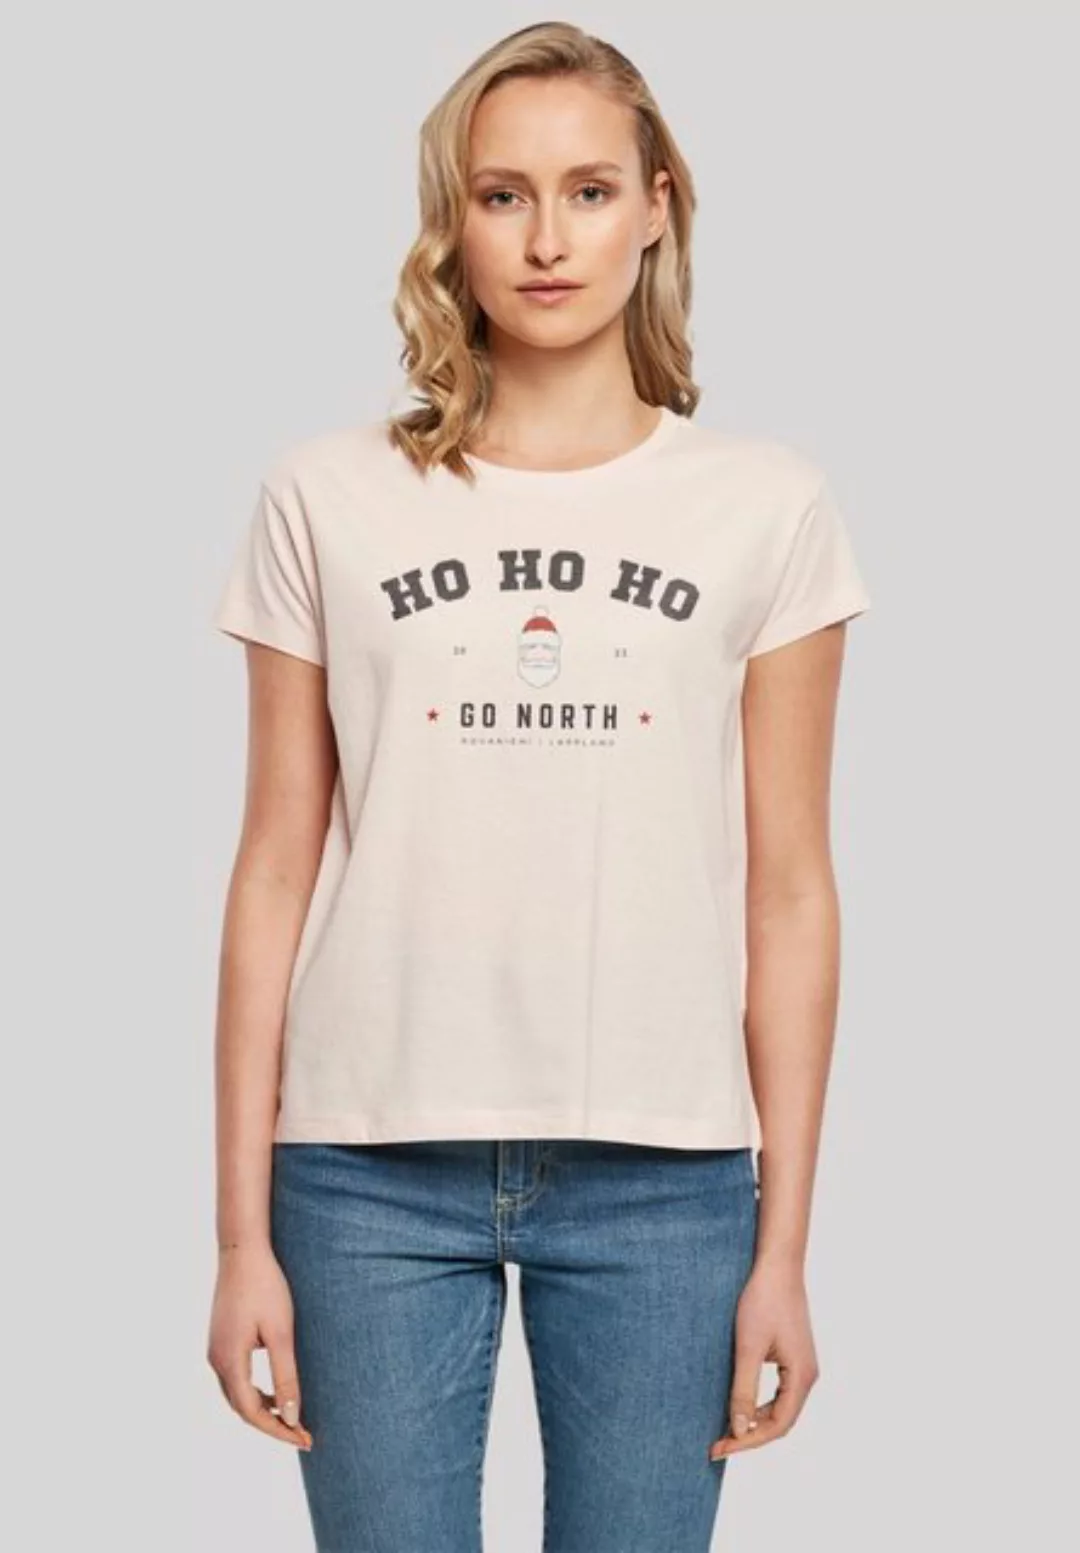 F4NT4STIC T-Shirt "Ho Ho Ho Santa Claus Weihnachten", Weihnachten, Geschenk günstig online kaufen